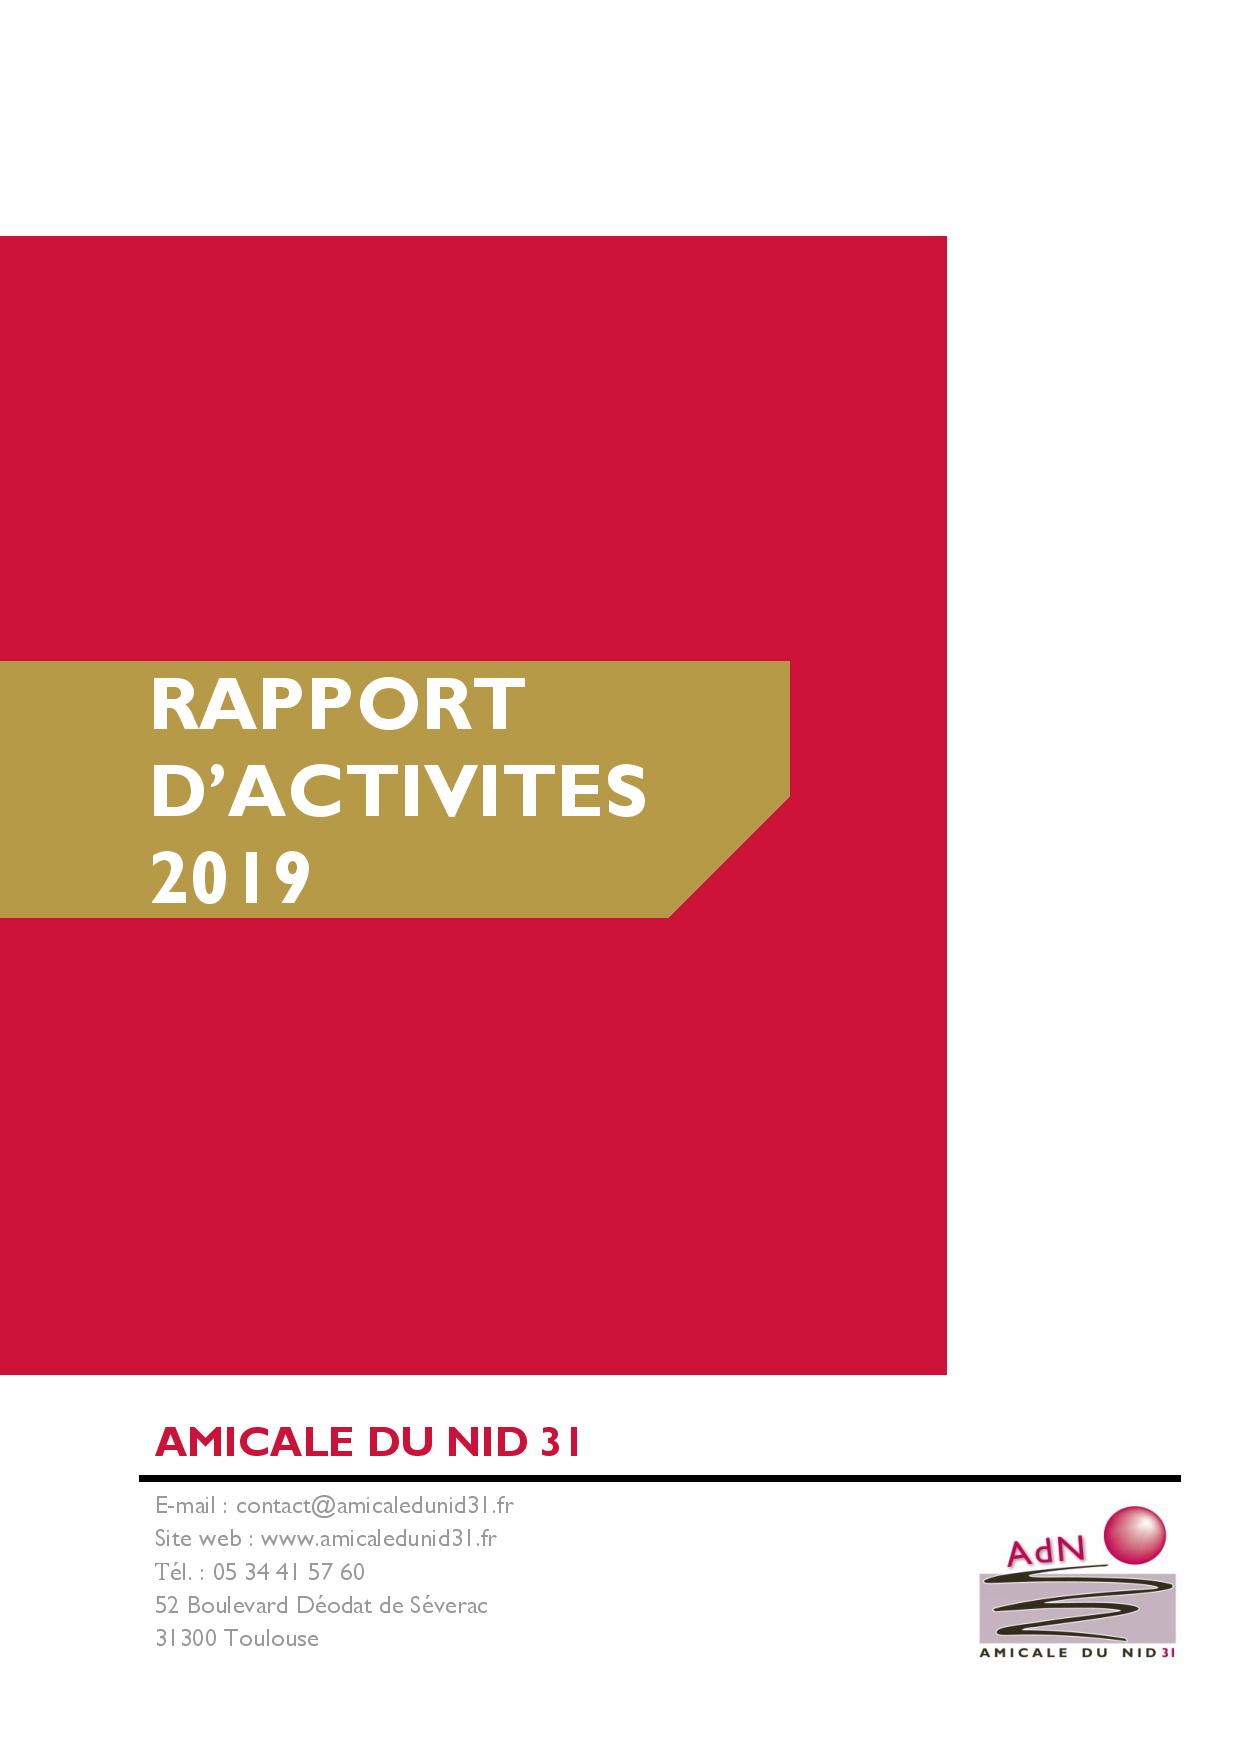 RAPPORT D'ACTIVITES 2019